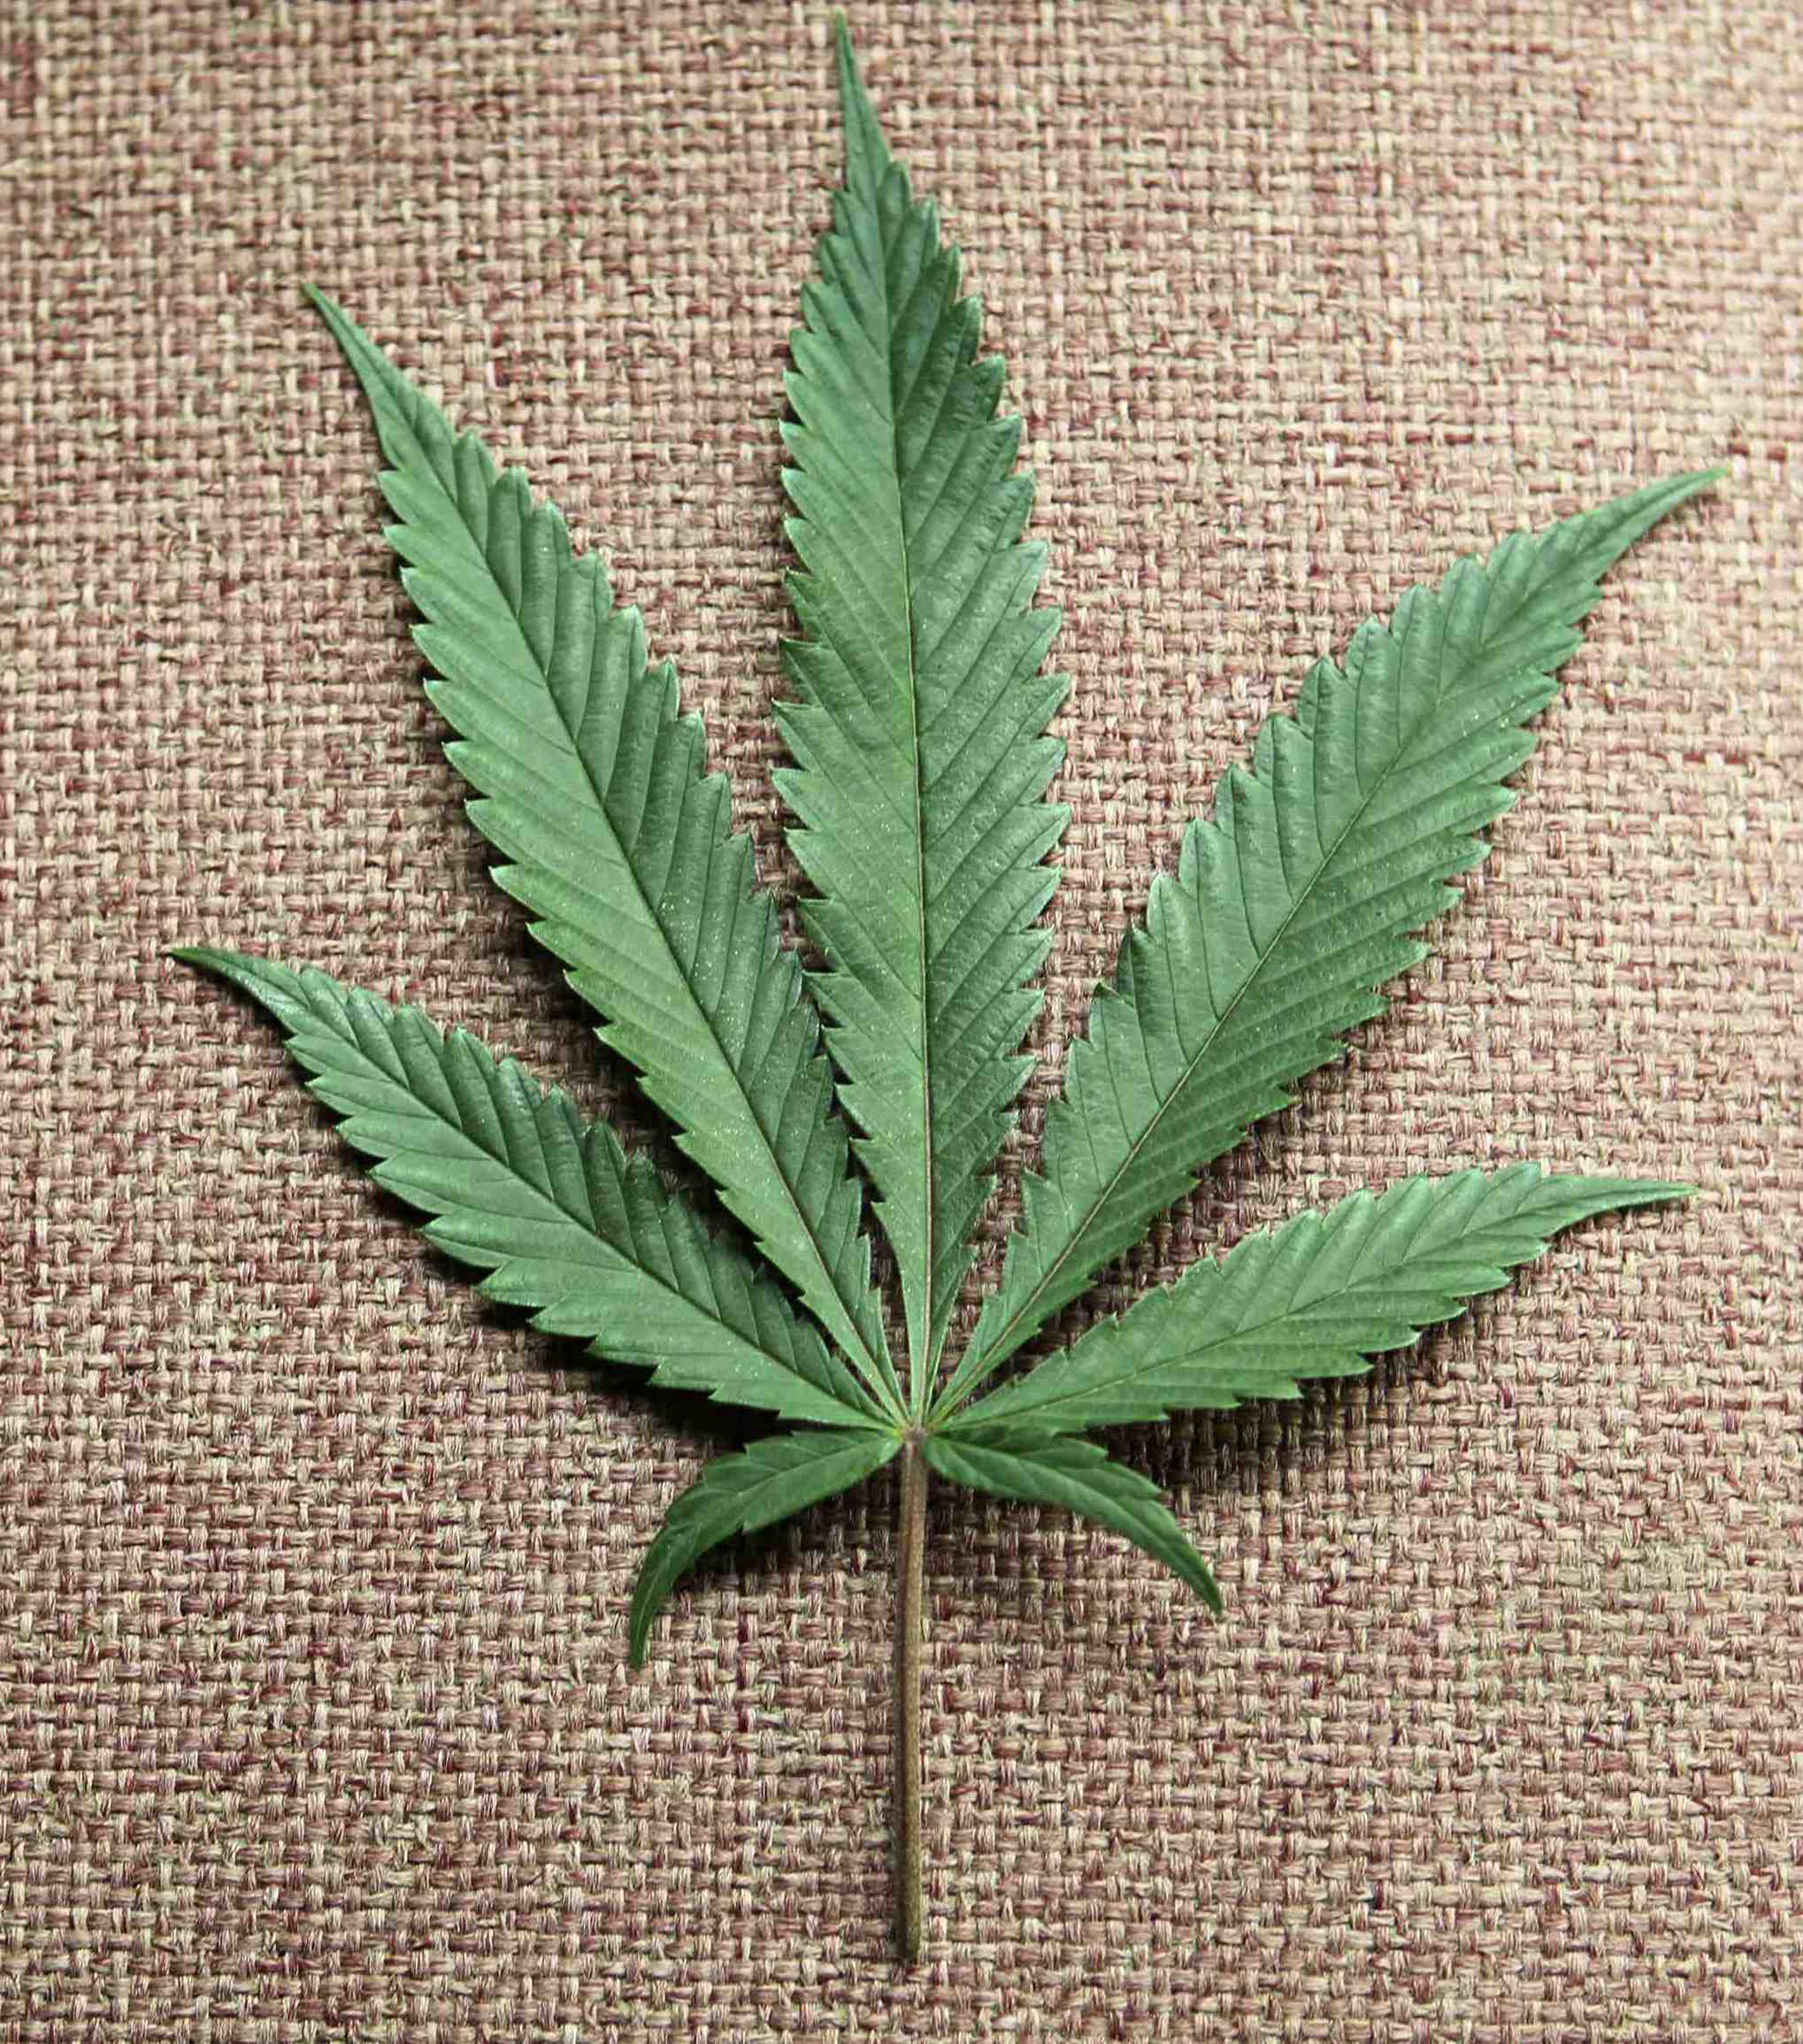 Периоды цветения марихуаны взращивание марихуаны